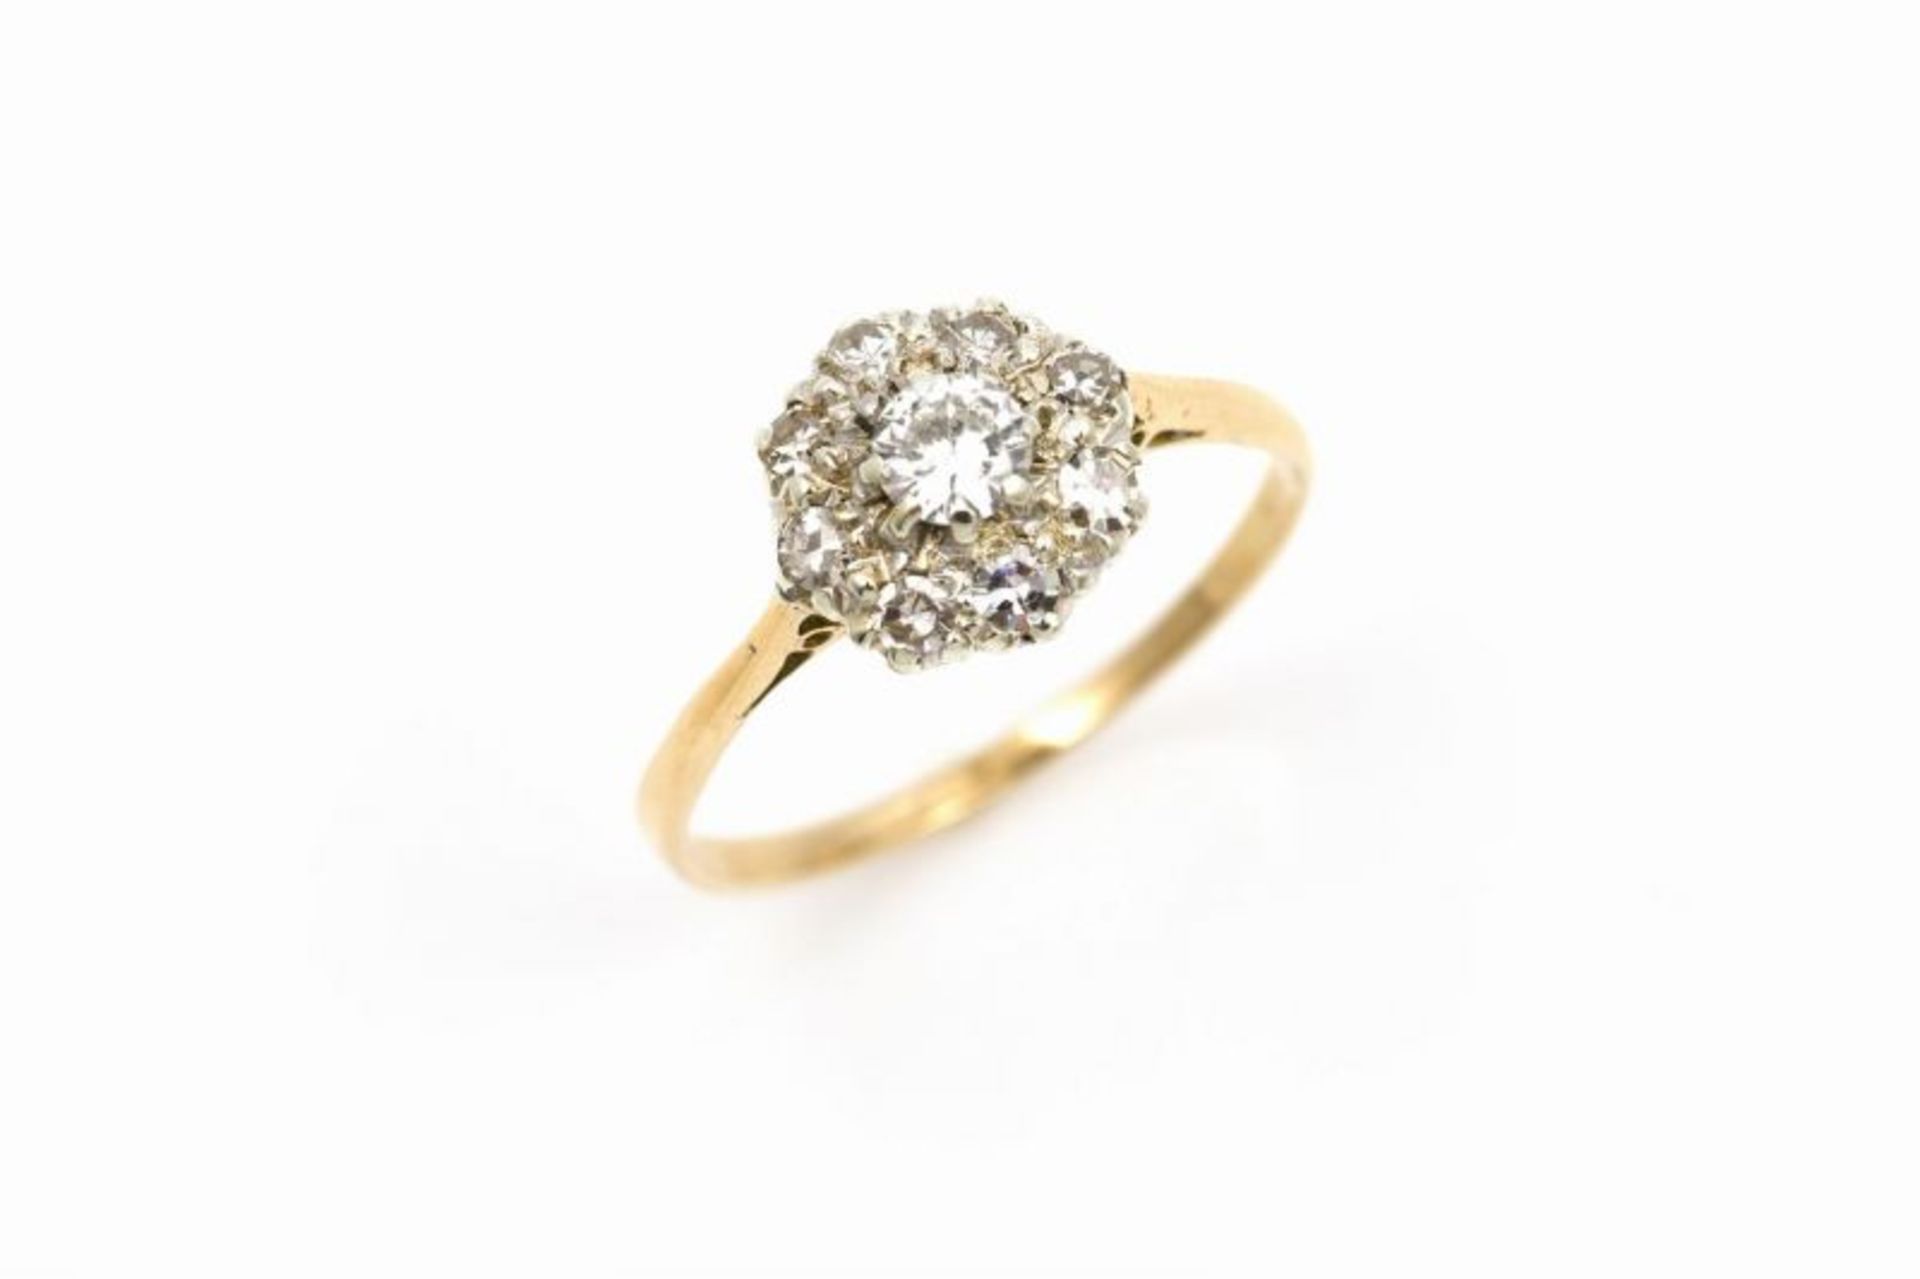 18 krt. gouden ring bezet met 1 centrale diamant omringd door 8 diamanten van totaal circa 0.50